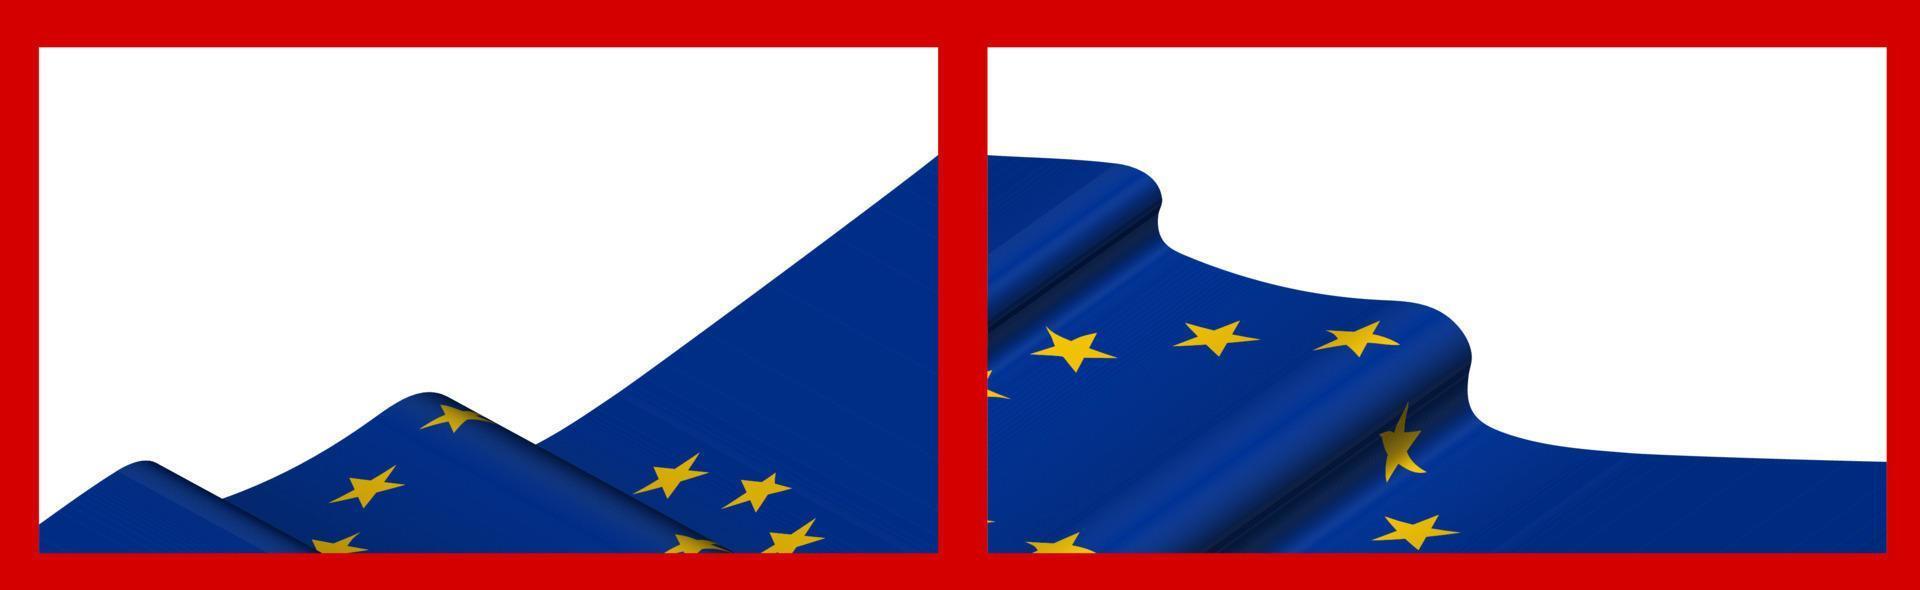 plano de fundo, modelo para design festivo. bandeira da união europeia balançando ao vento. vetor realista em fundo vermelho